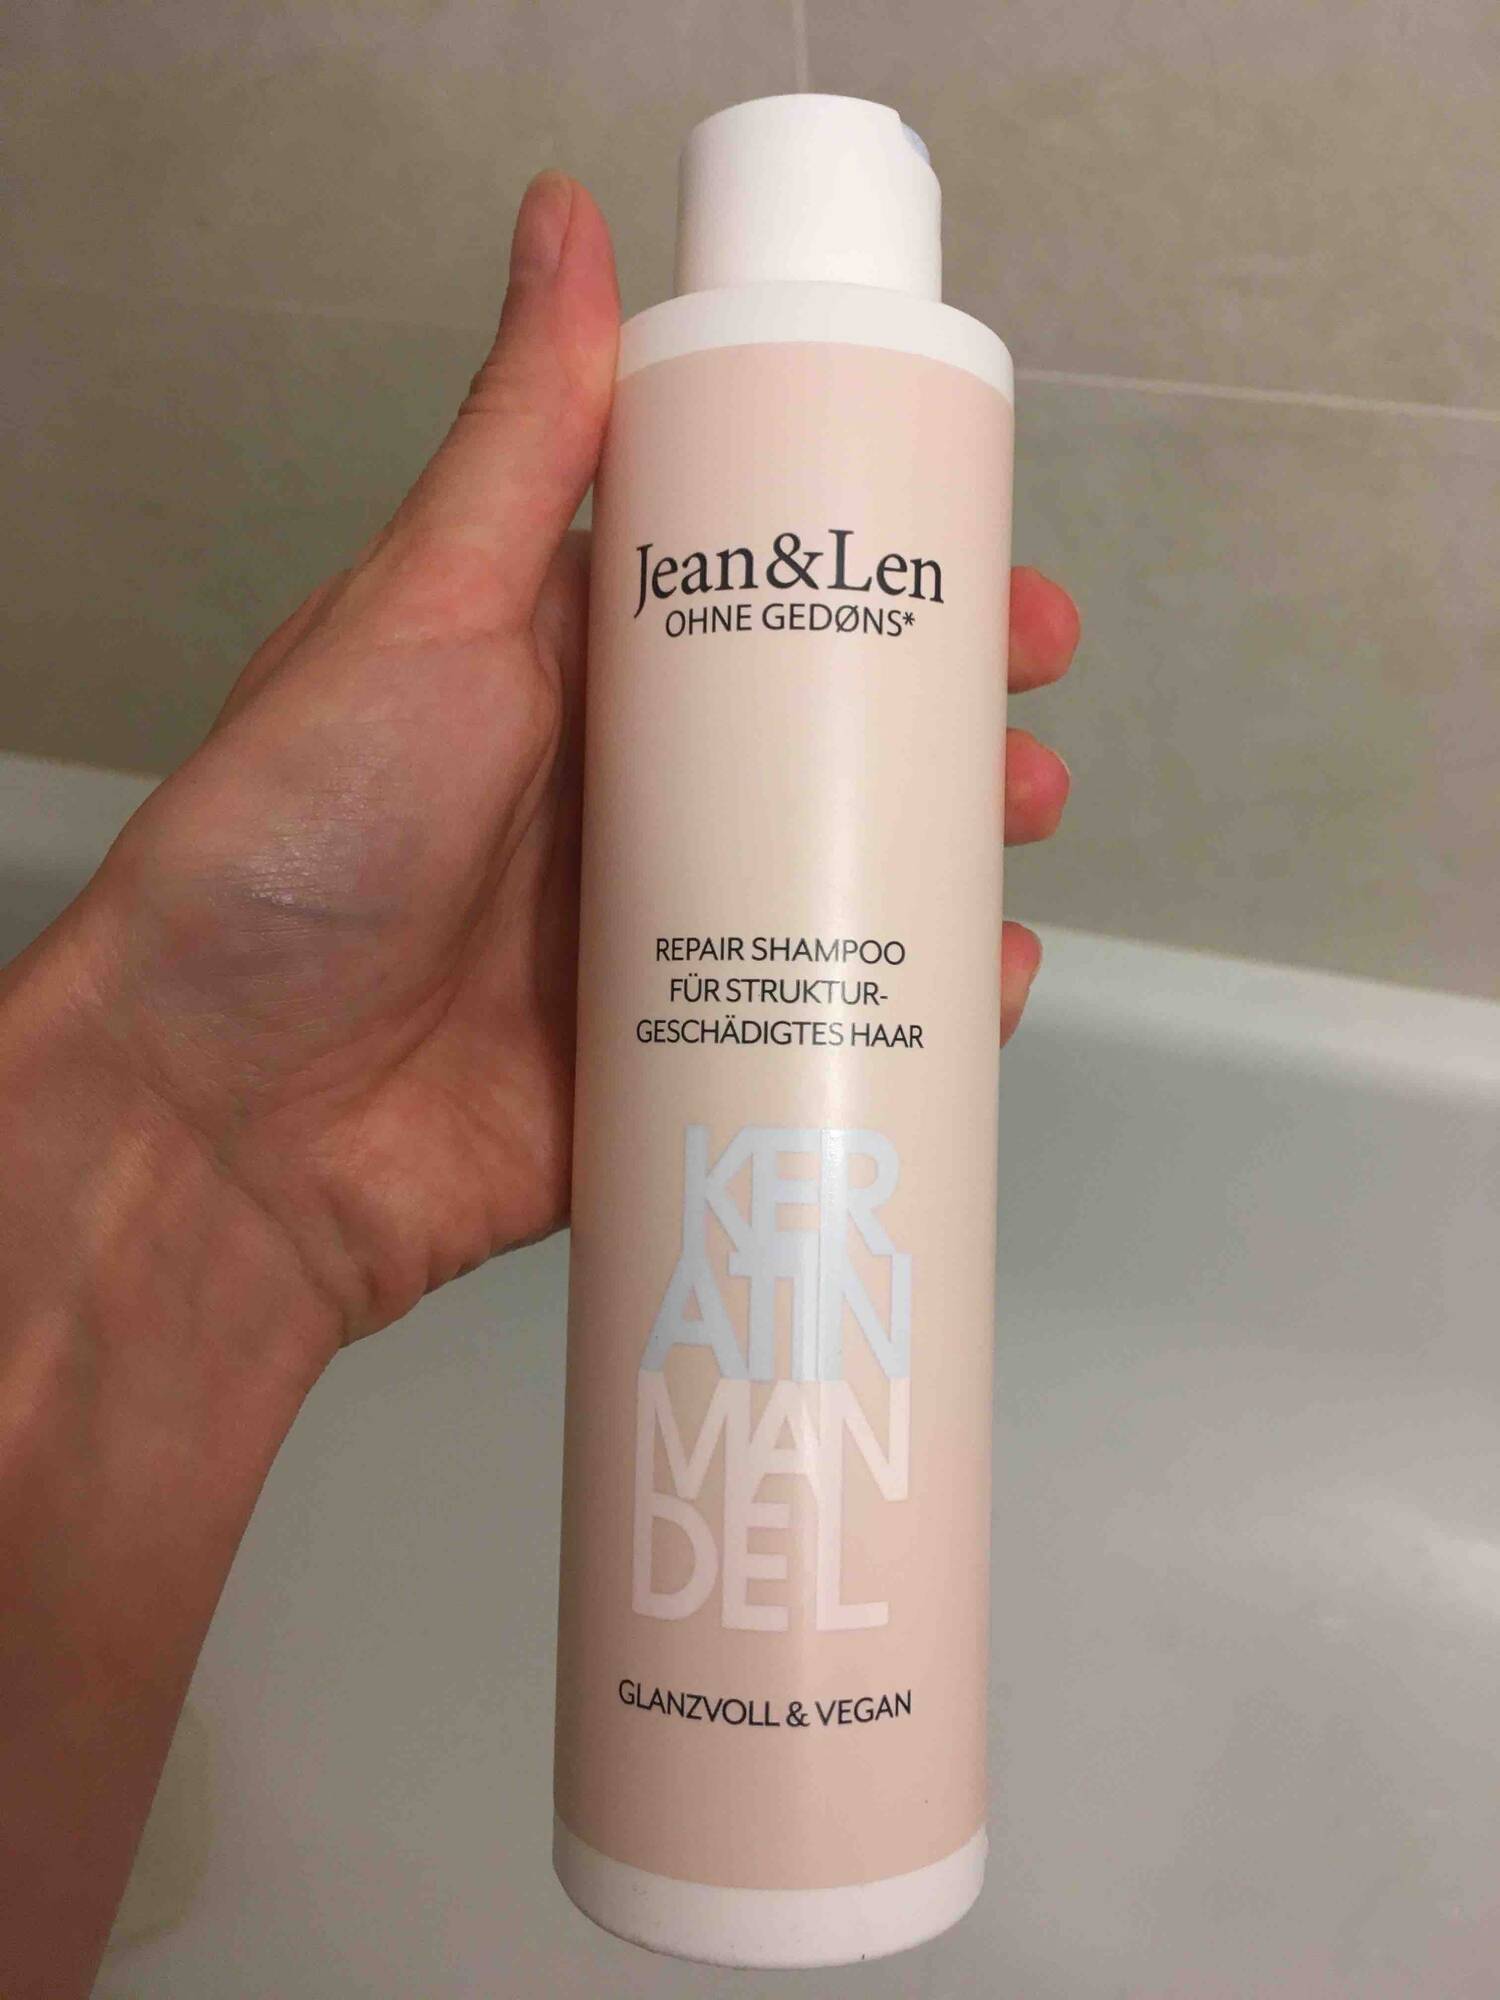 JEAN & LEN - Keratin mandel - Repair shampoo